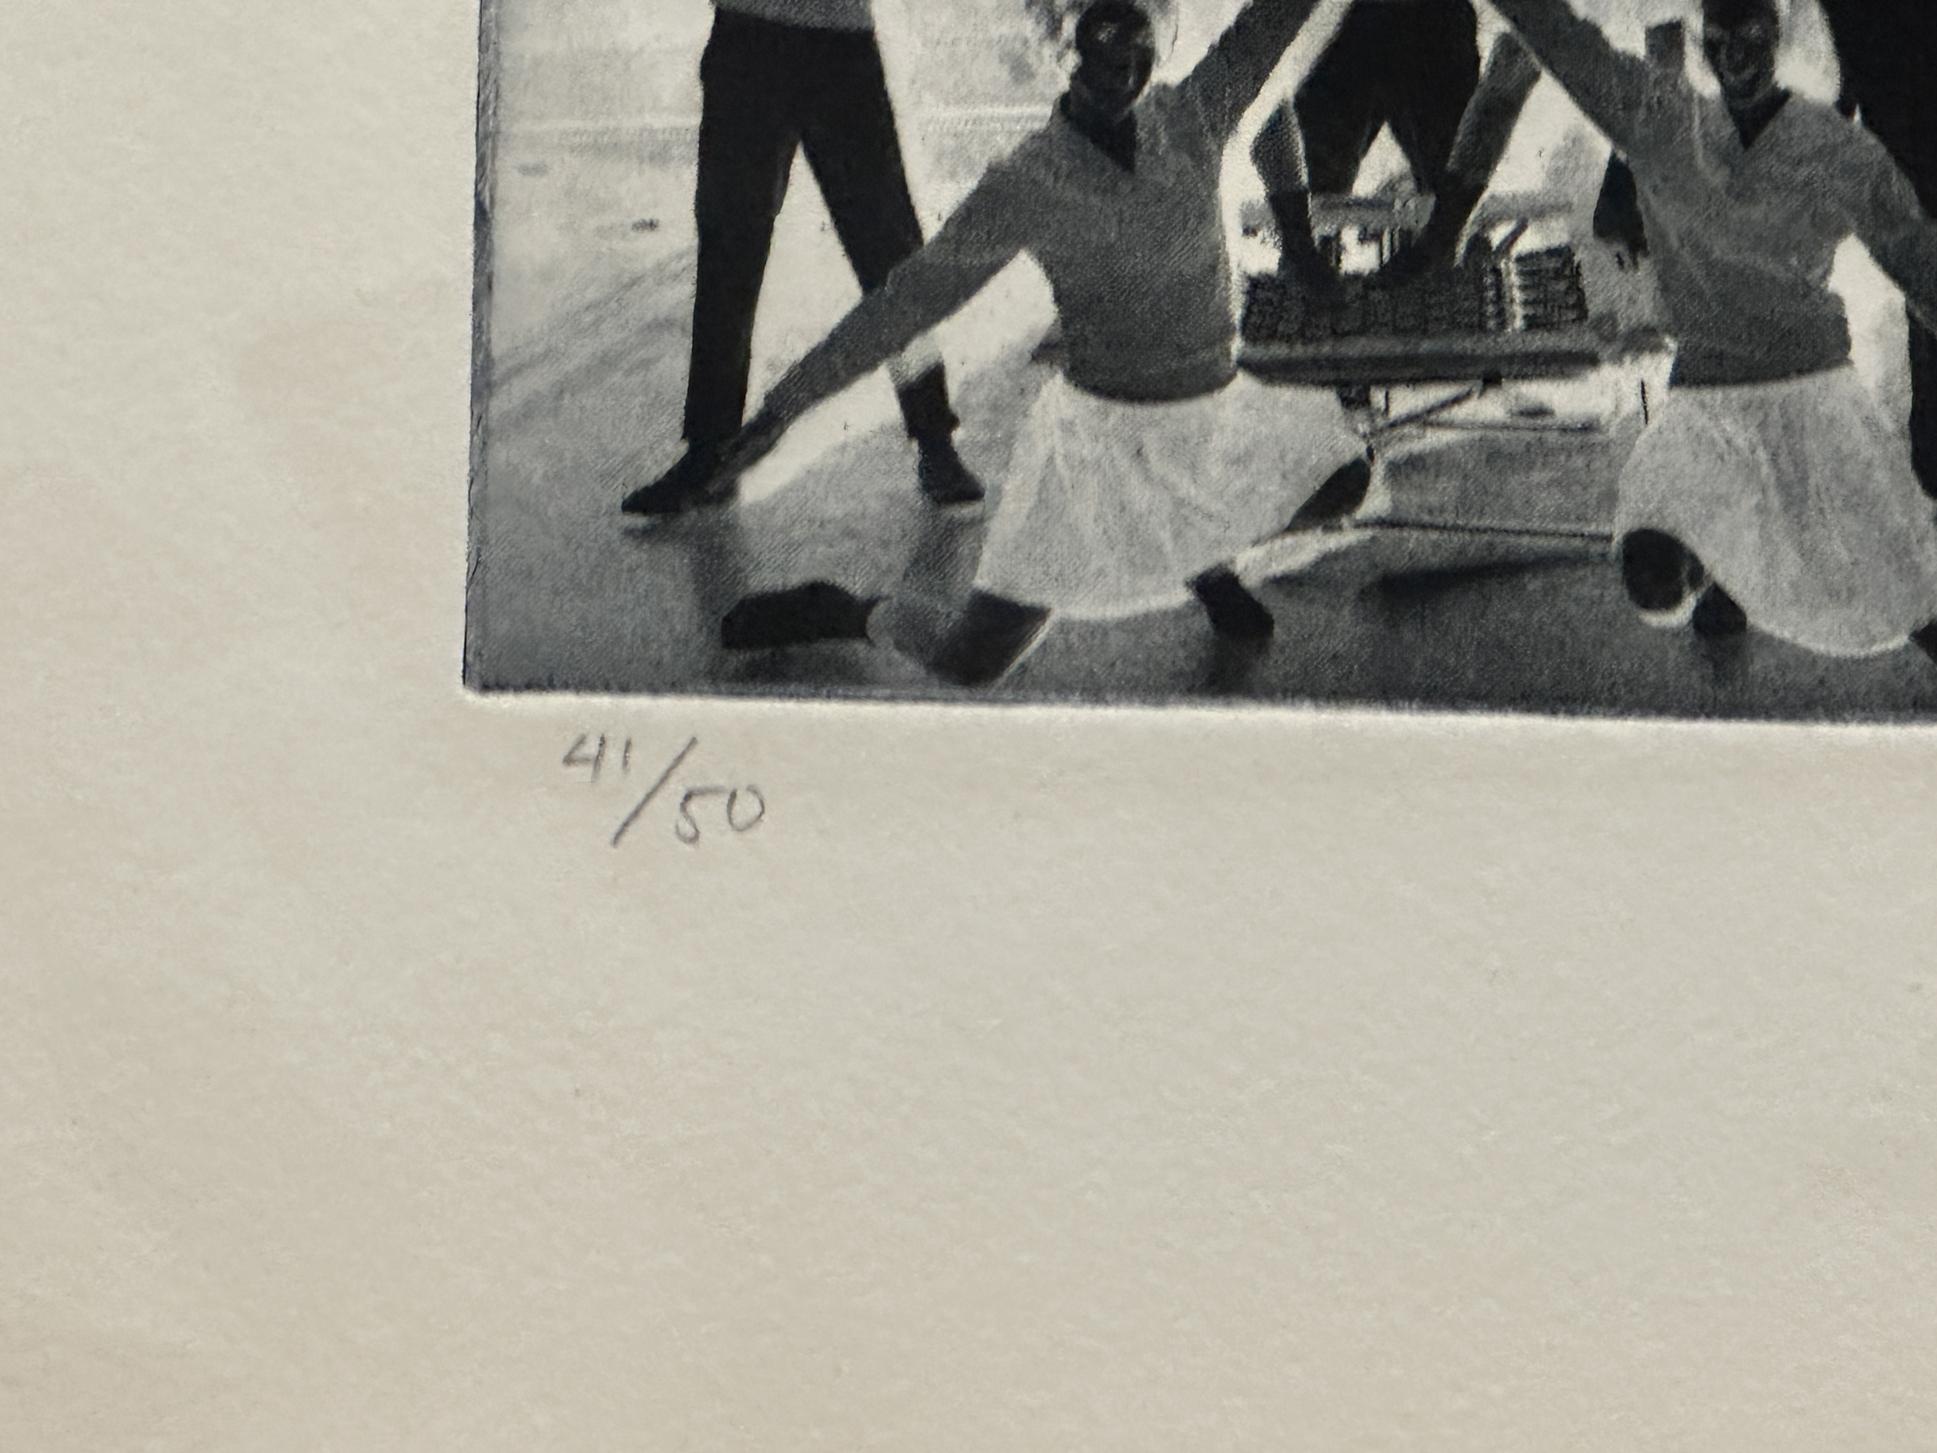 Nom de l'artiste : Warrington Colescott
Année : 1970
Type de support : Lithographie
Taille-Largeur  Taille-Hauteur : 31'' x 22.5''
Signé  Taille de l'édition : signée au crayon, titrée et numérotée  41/50

Warrington JR (1921 - 2018) était un